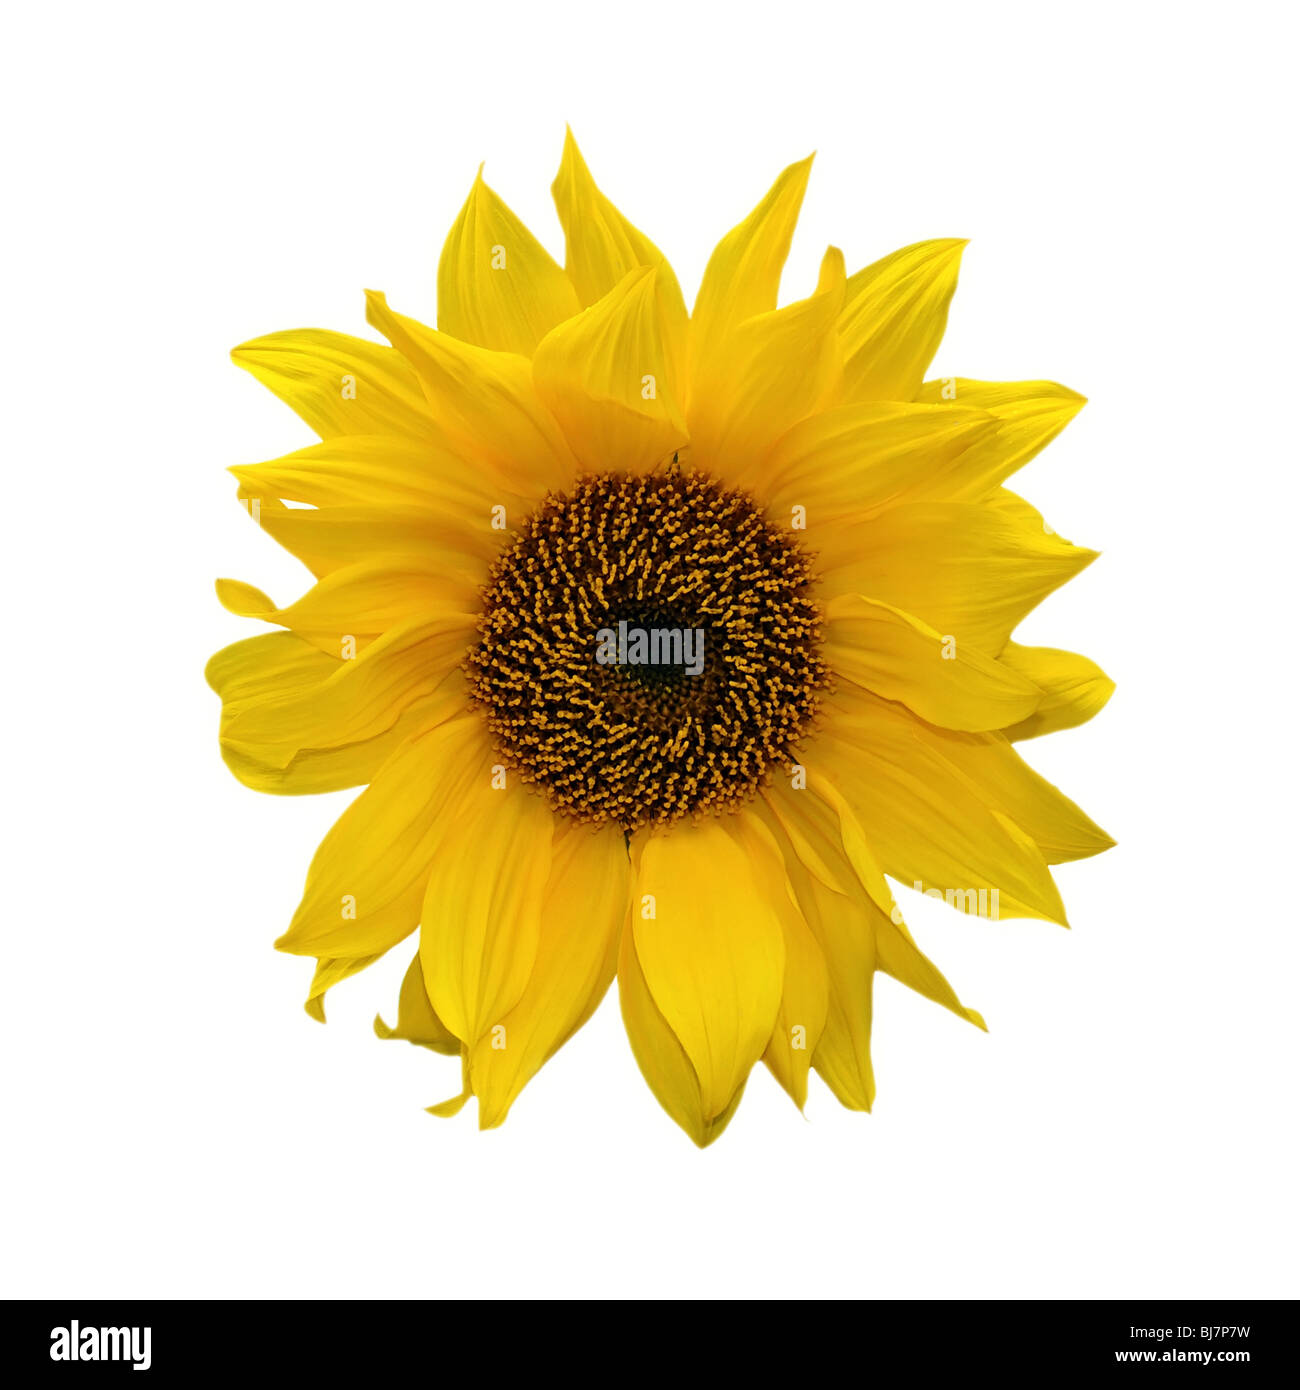 sunflower isolated on white background Stock Photo